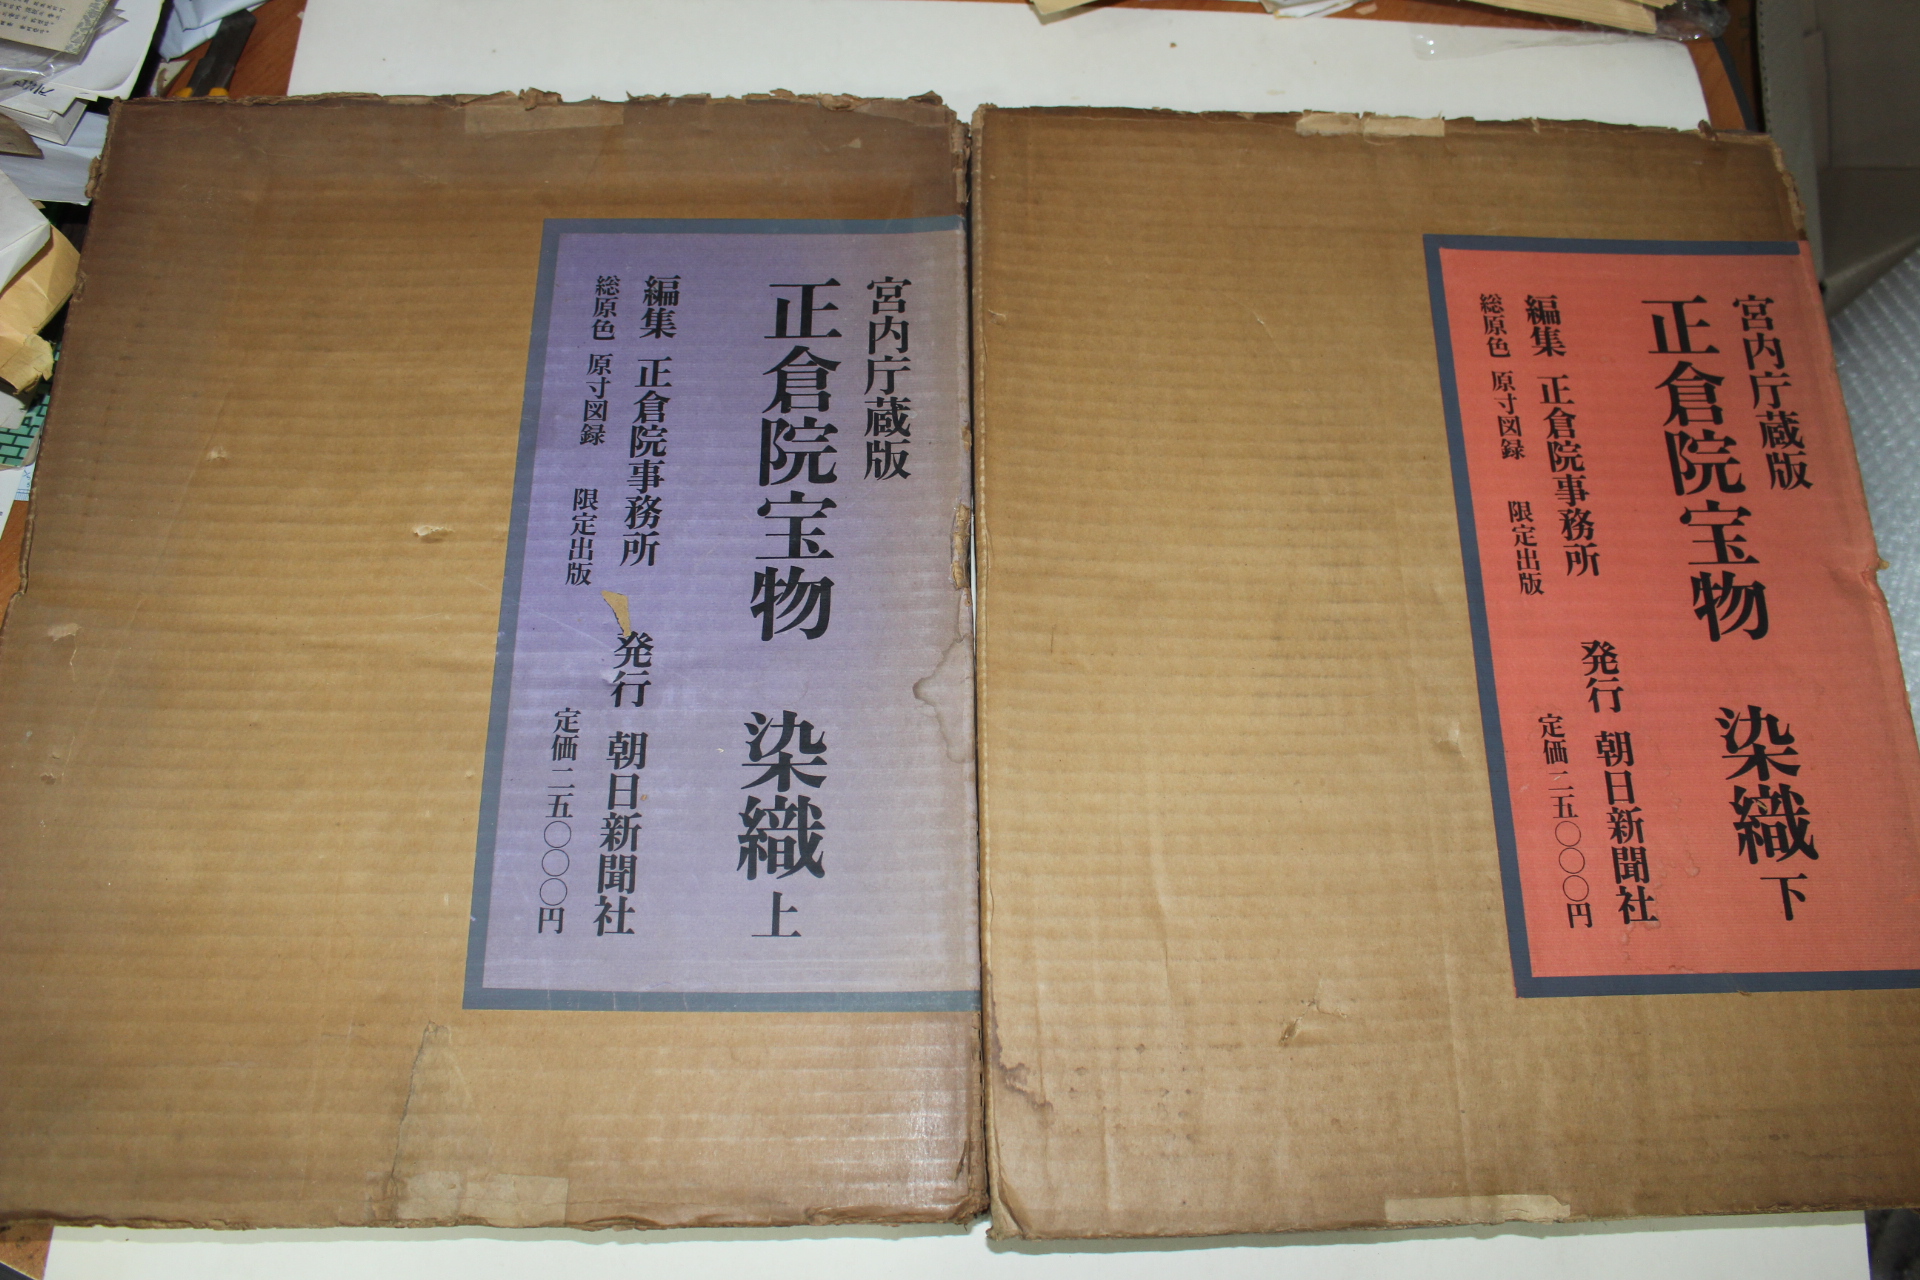 1963년(소화38년) 정창원보물(正倉院寶物) 염직(染織)상하 2책완질